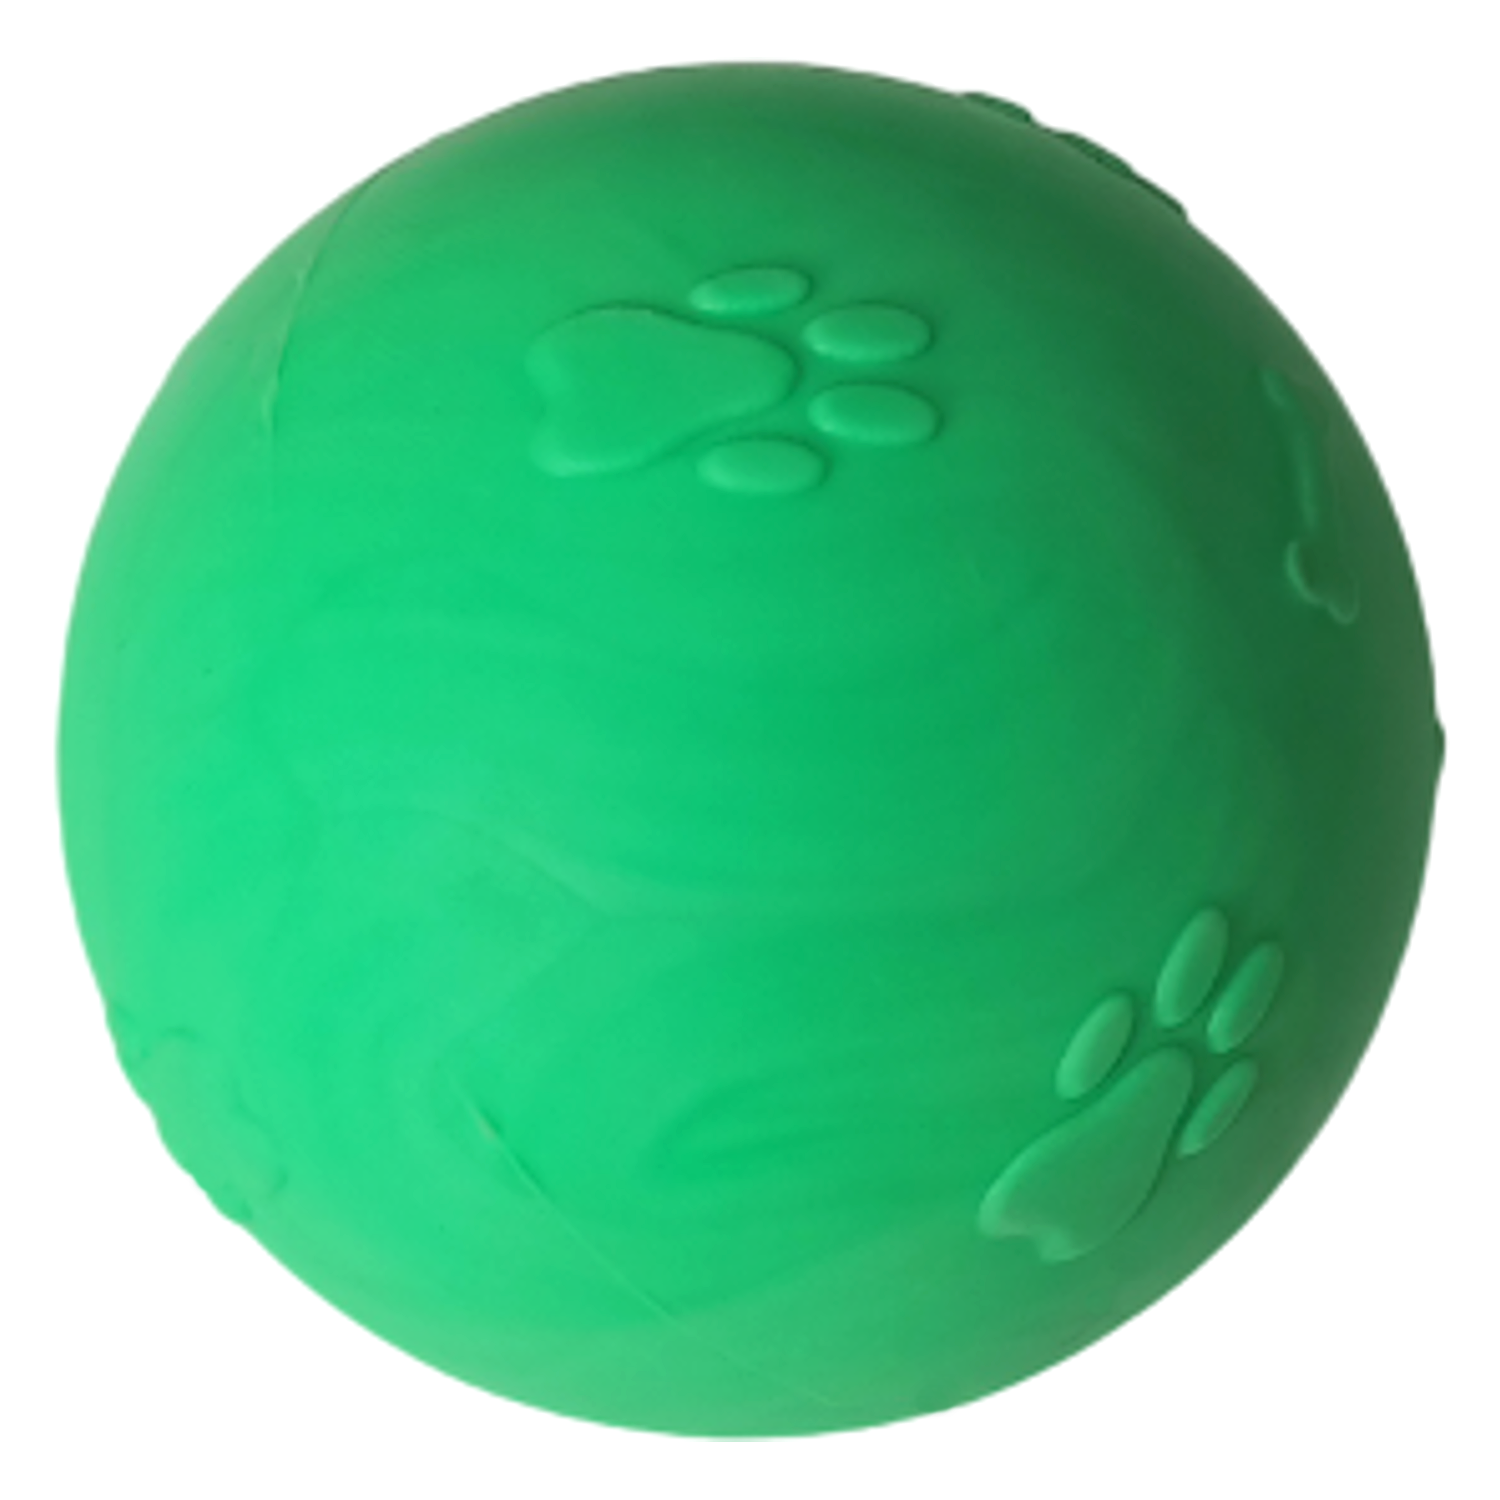 CLZ205 Pati Desenli Sert Köpek Oyun Topu 7 cm Medium Yeşil